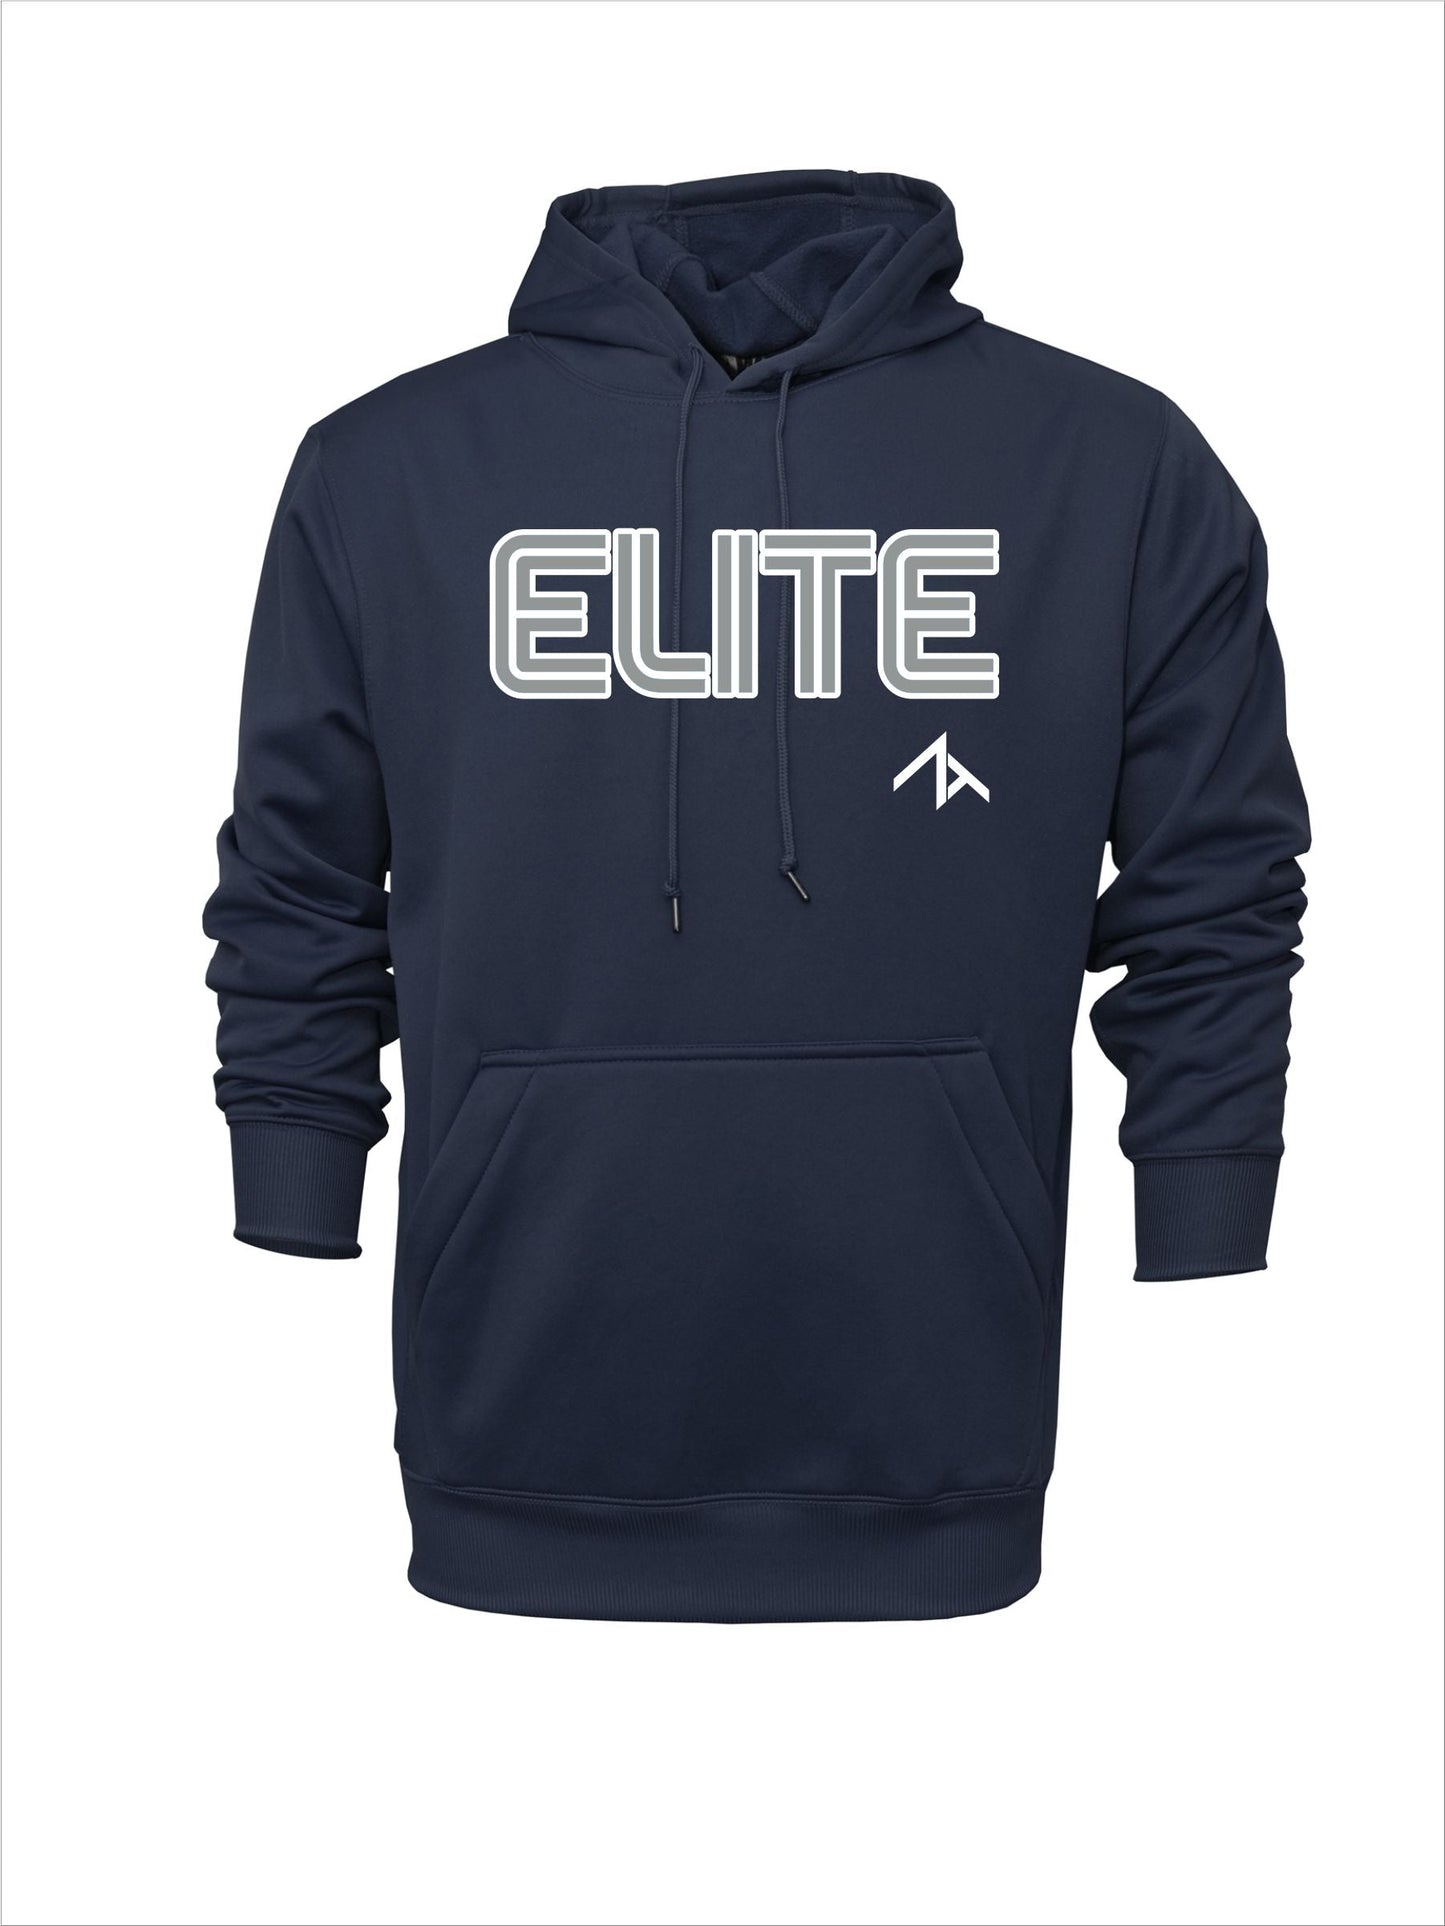 Long-sleeve "Elite" Polyester Hoodie - Navy or Grey Logo